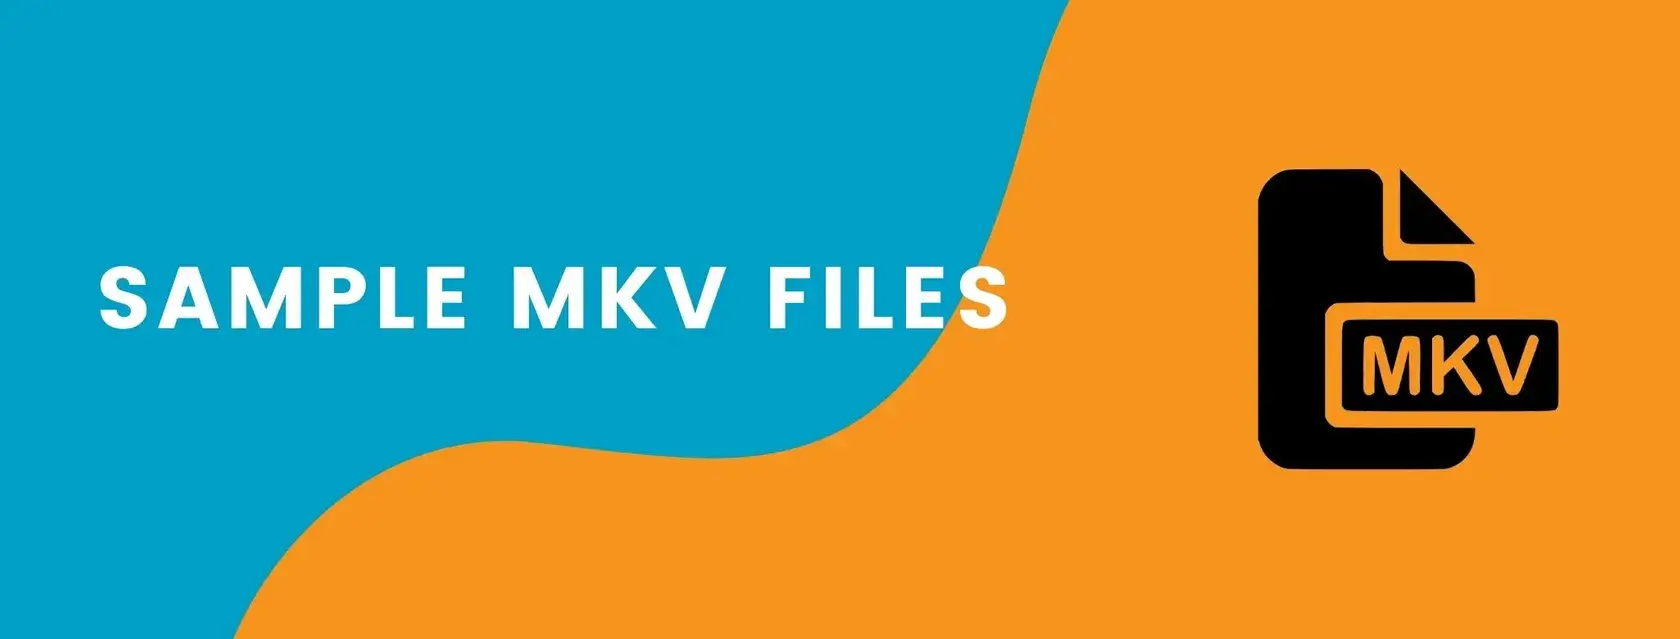 Sample MKV Files